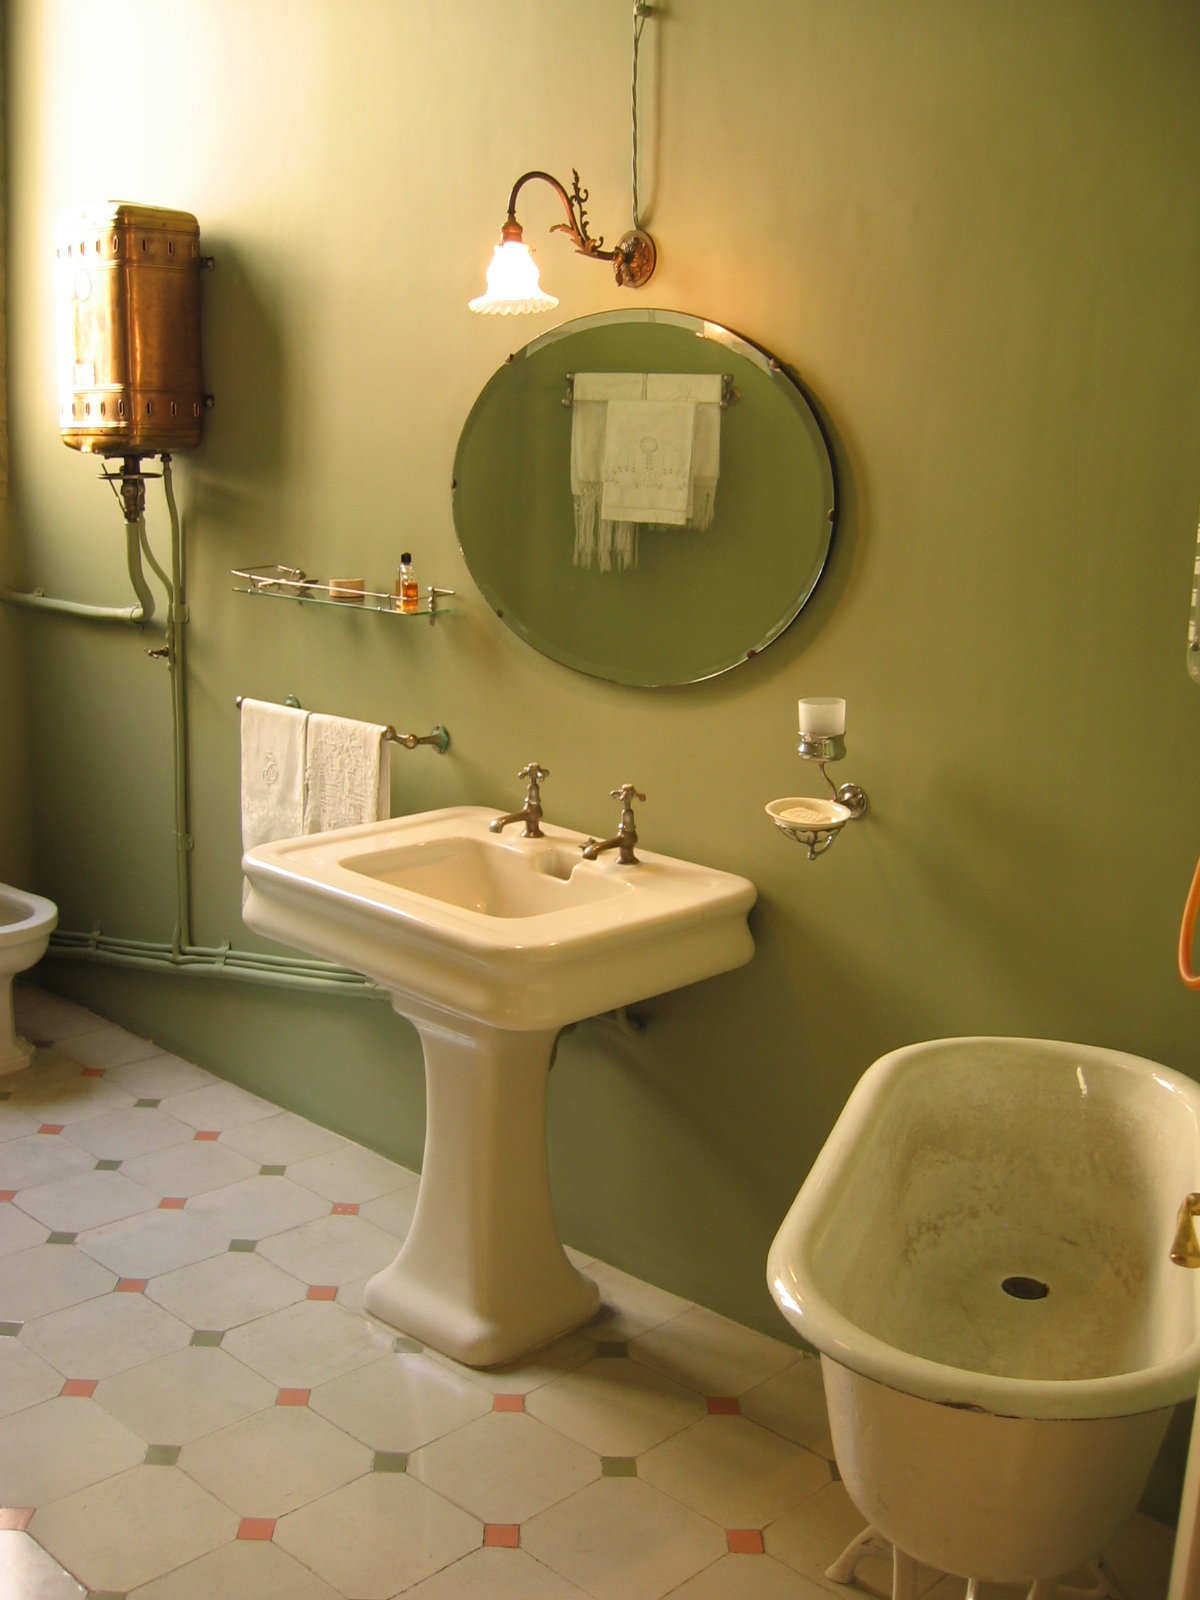 Какой краской можно покрасить в ванной. Покрашенная ванная. Крашенные стены в ванной комнате. Окрашенные стены в ванной. Ванная покрашенная краской.